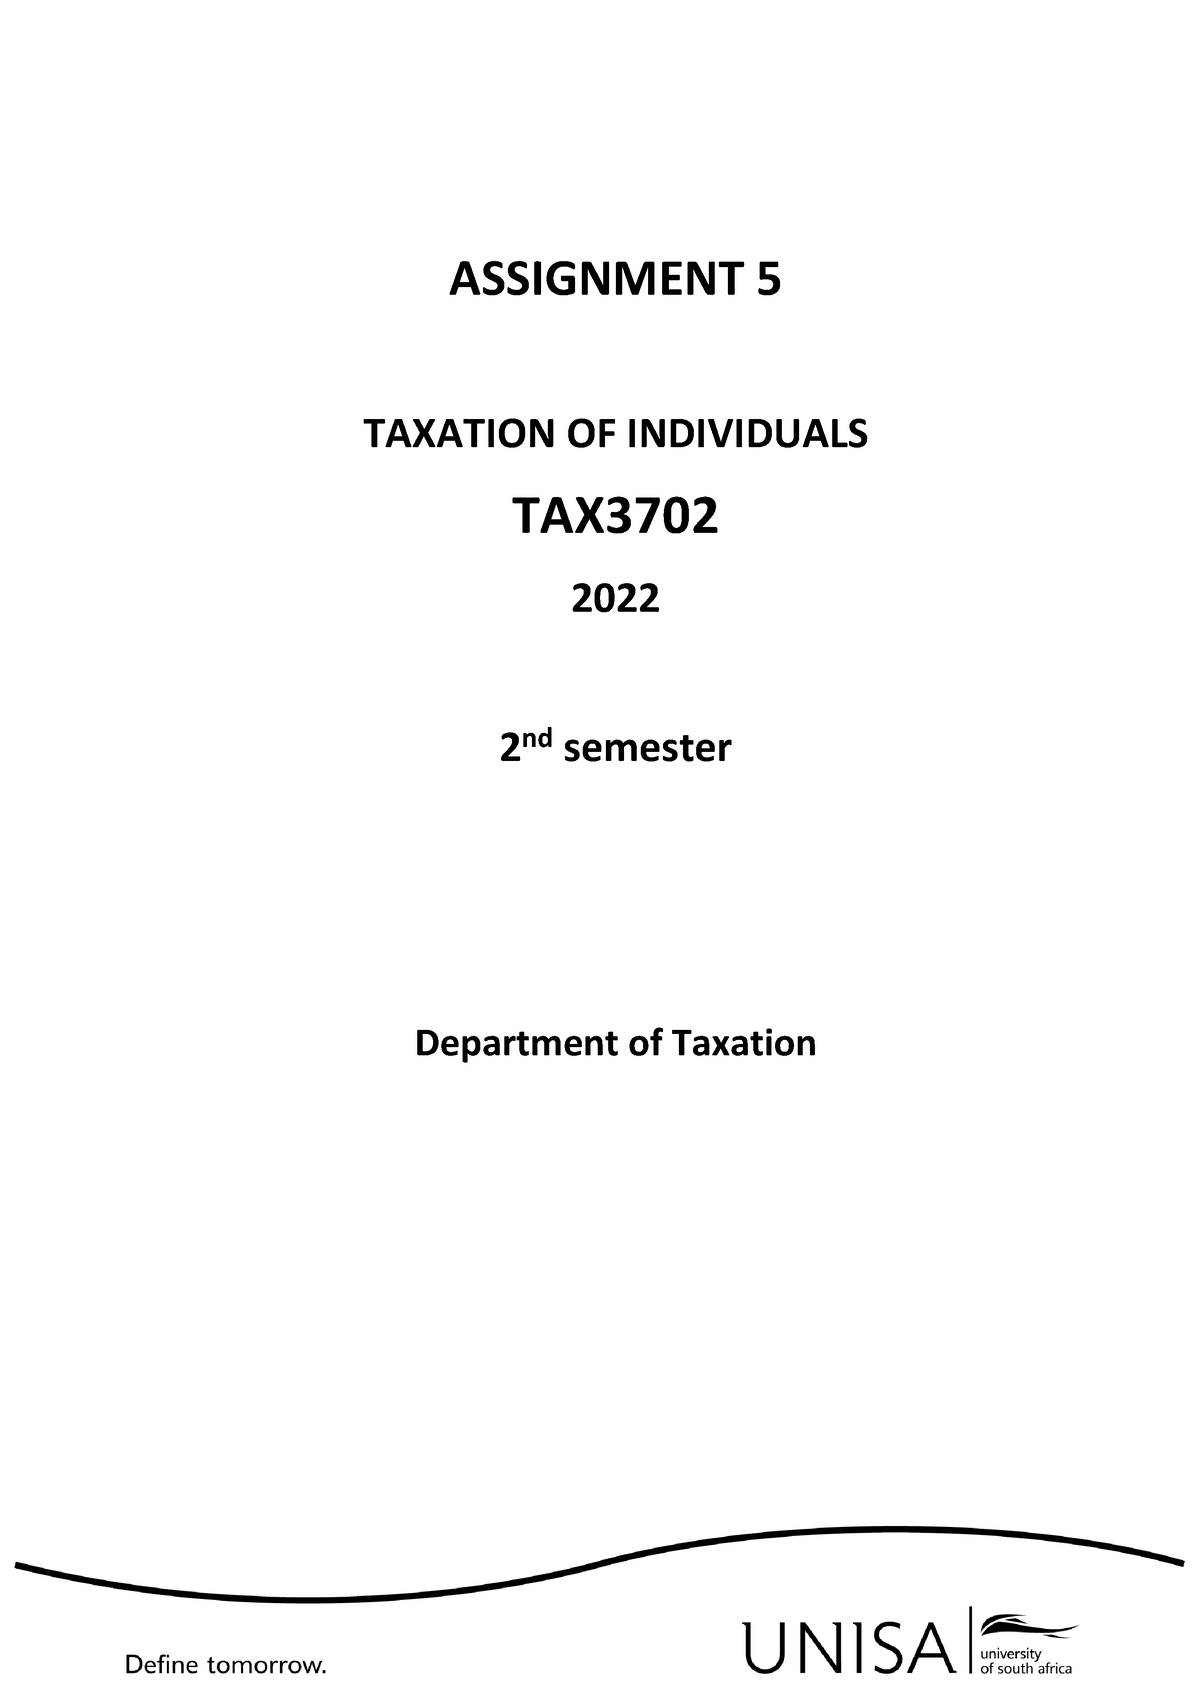 tax3702 assignment 5 semester 2